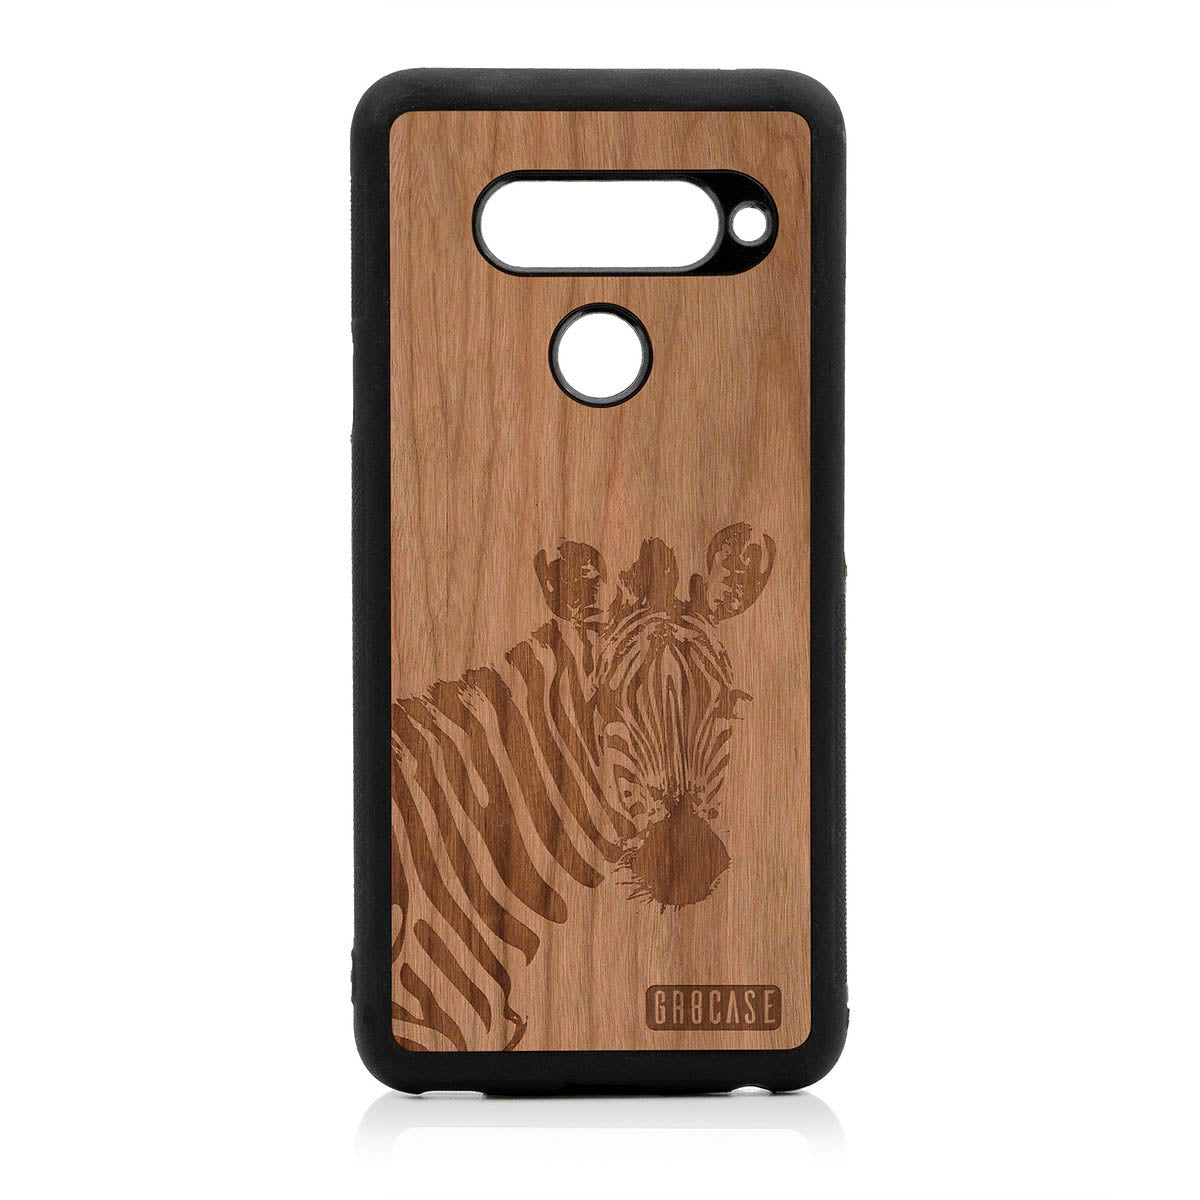 Lookout Zebra Design Wood Case For LG V40